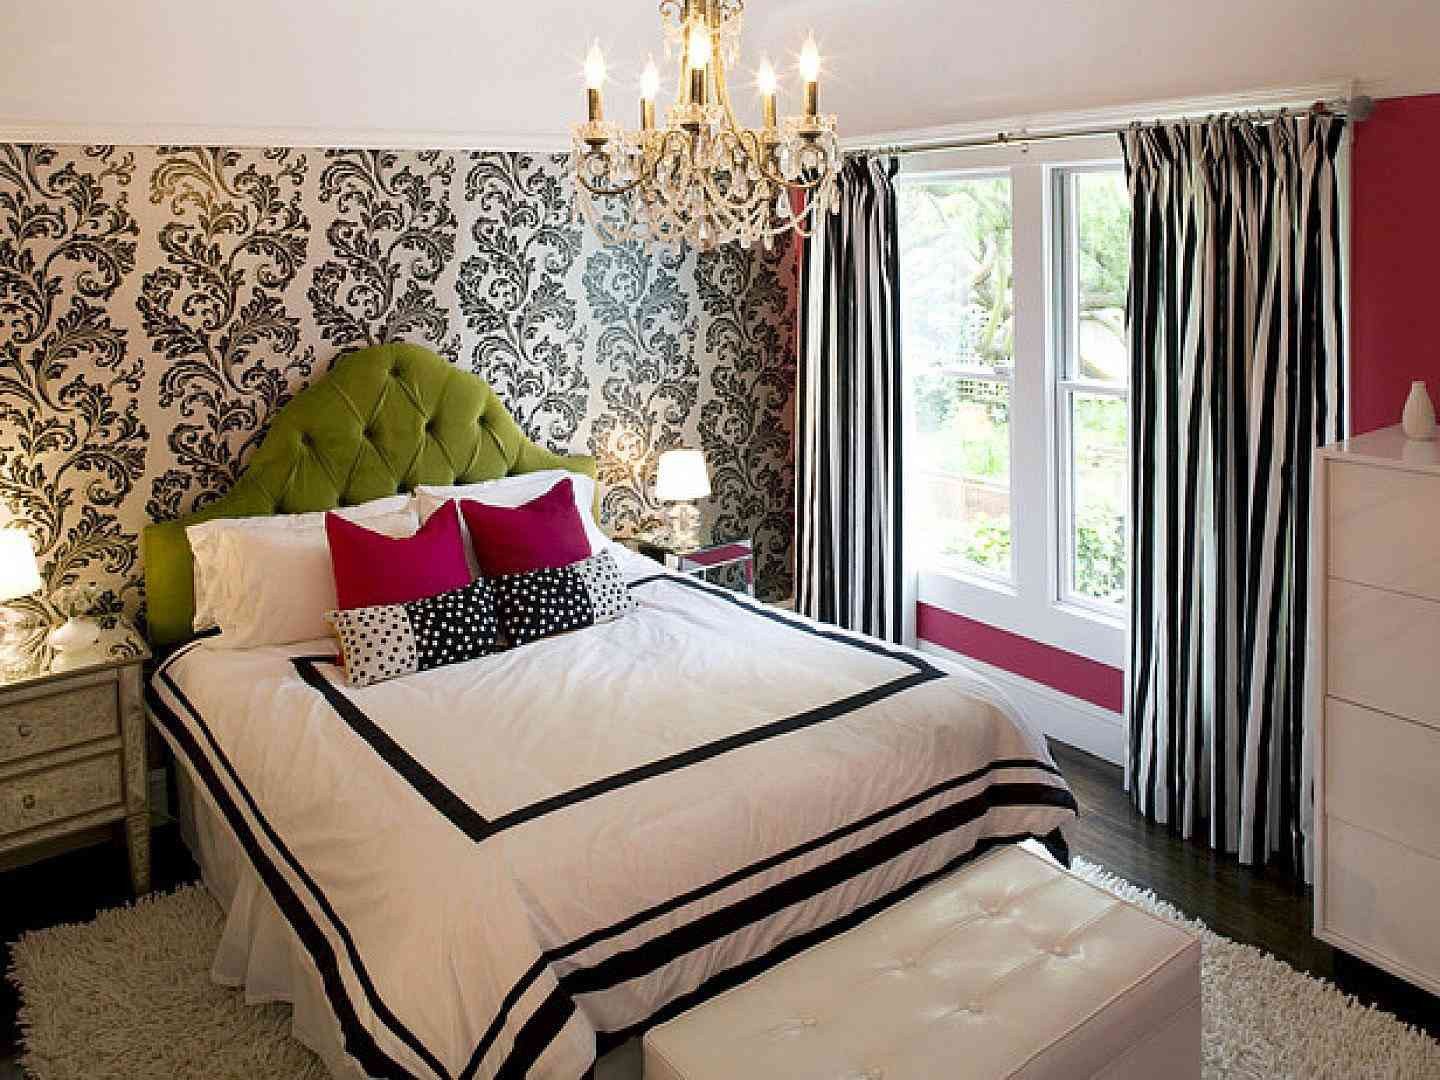 Regency Furniture Bedroom Set Best Of Mix Patterns In A Black Bedroom